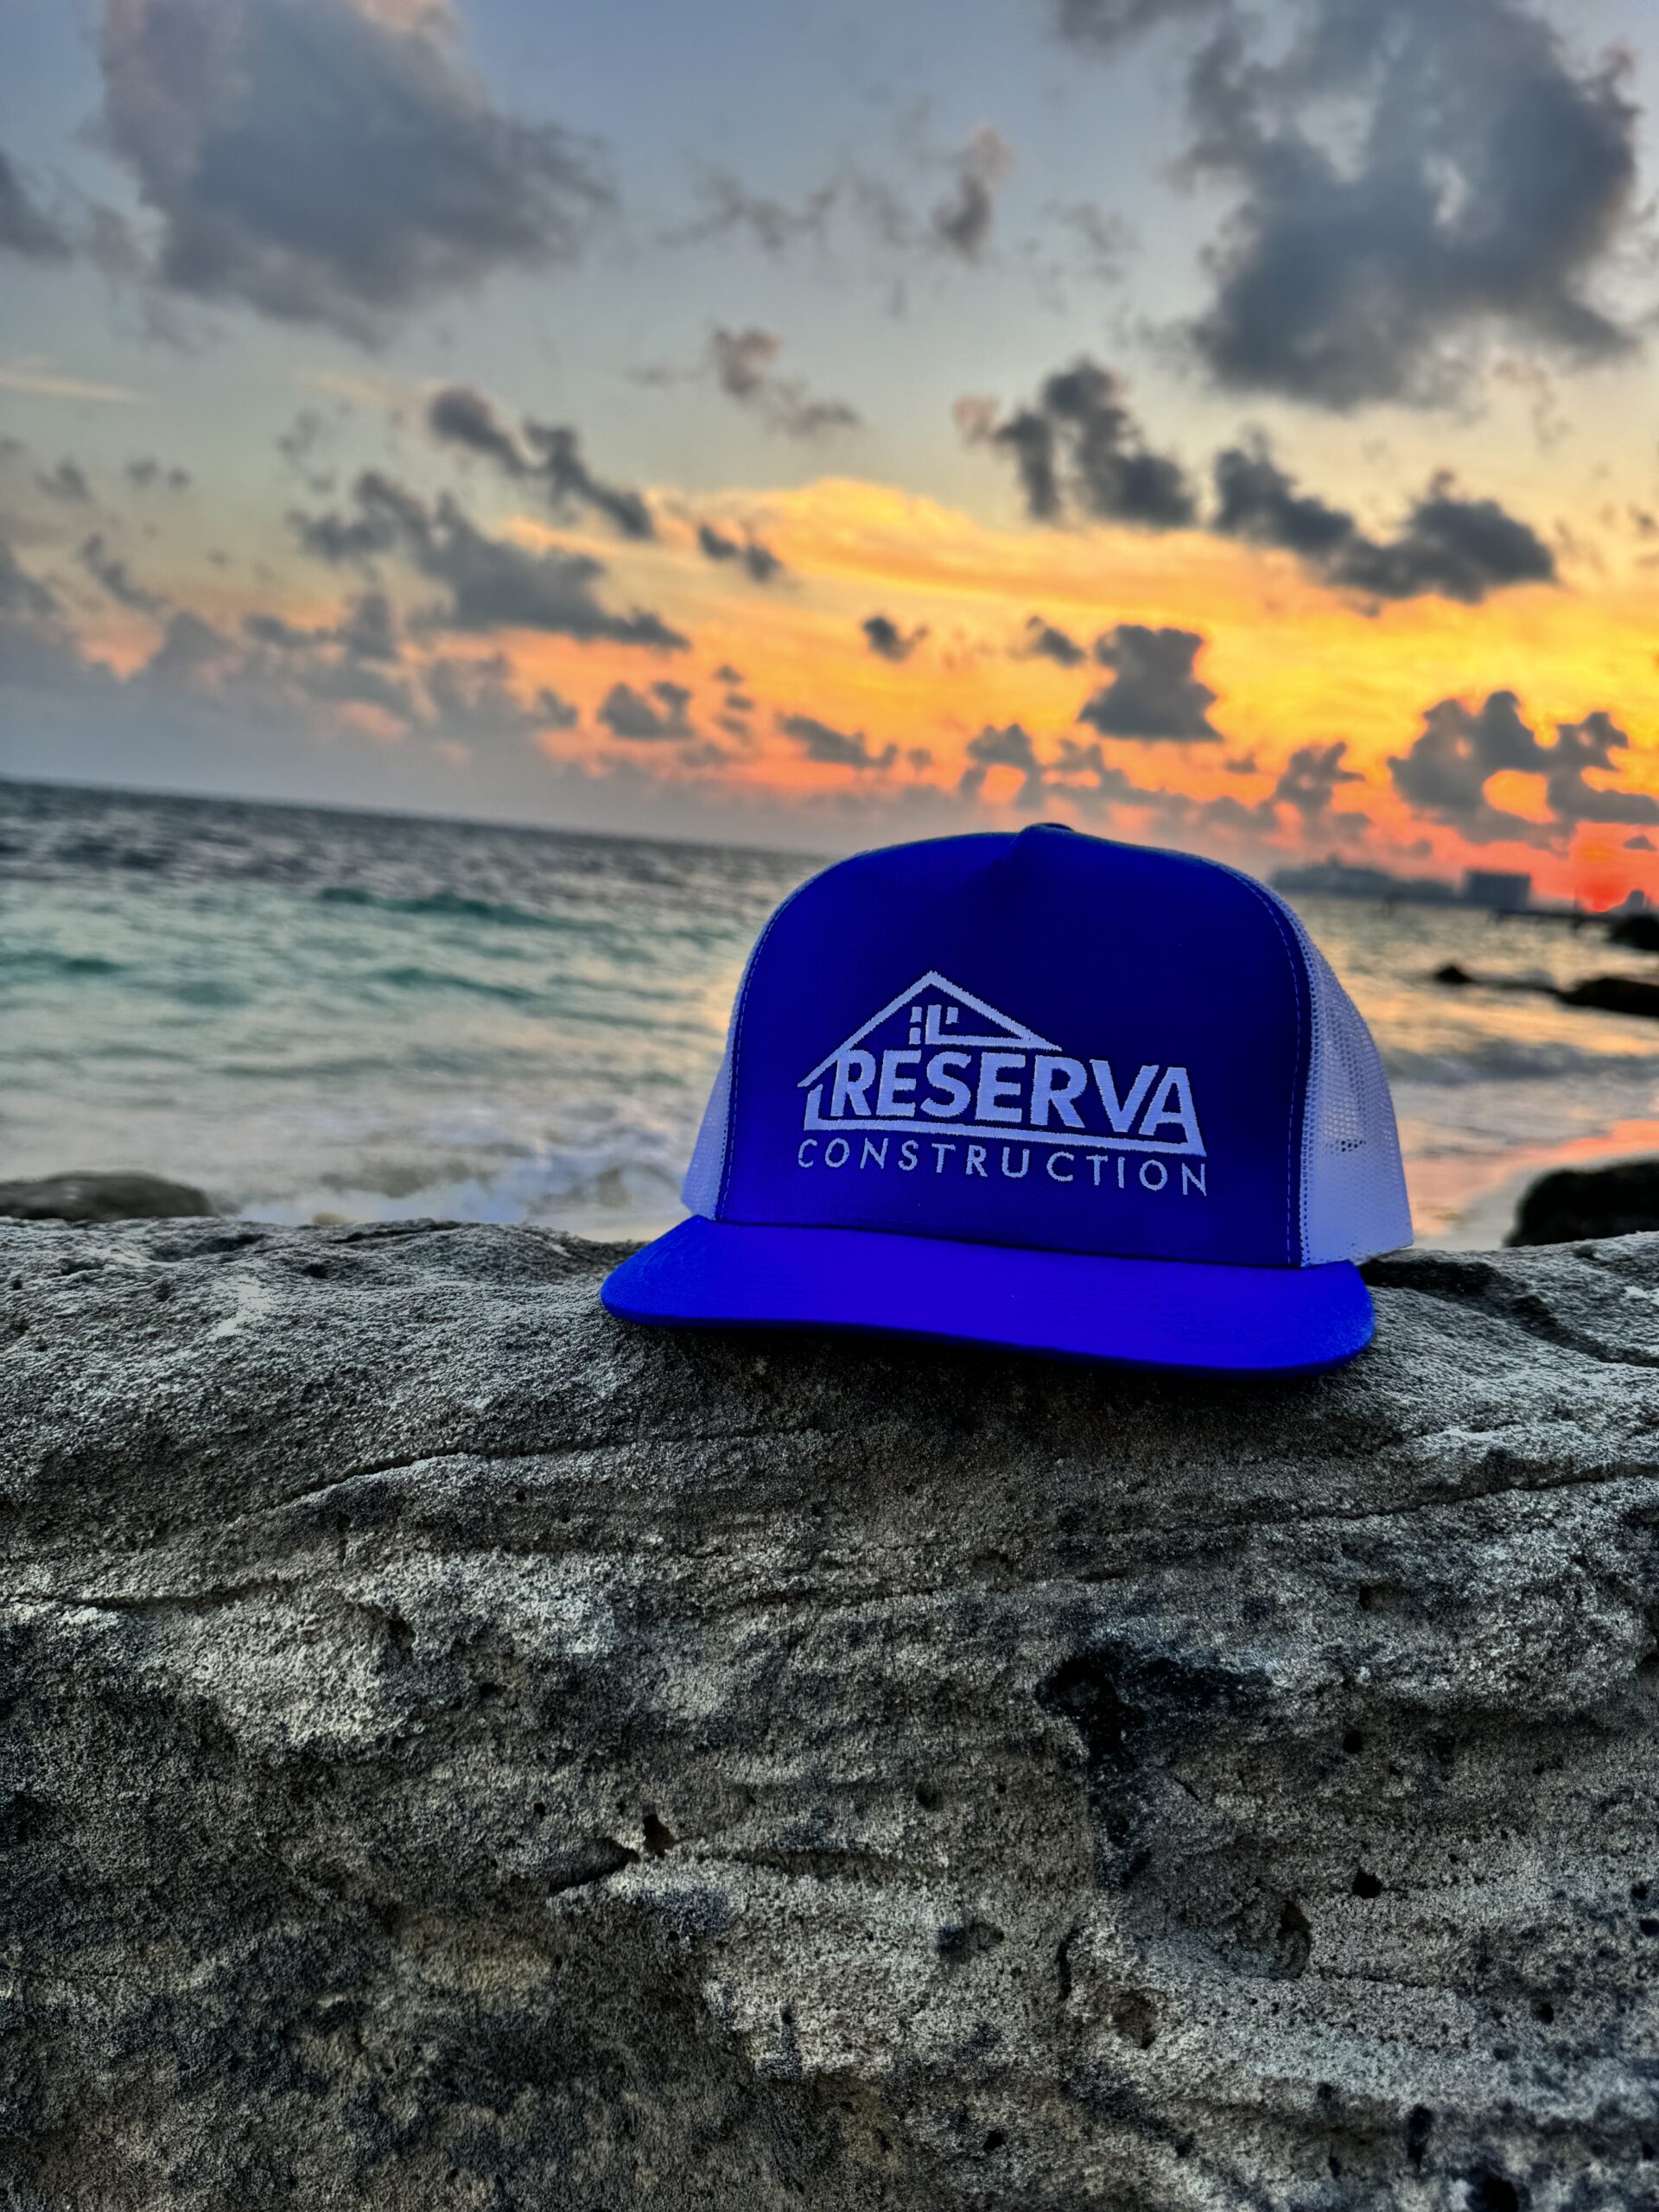 Reserva Construction Hat – Reserva Construction